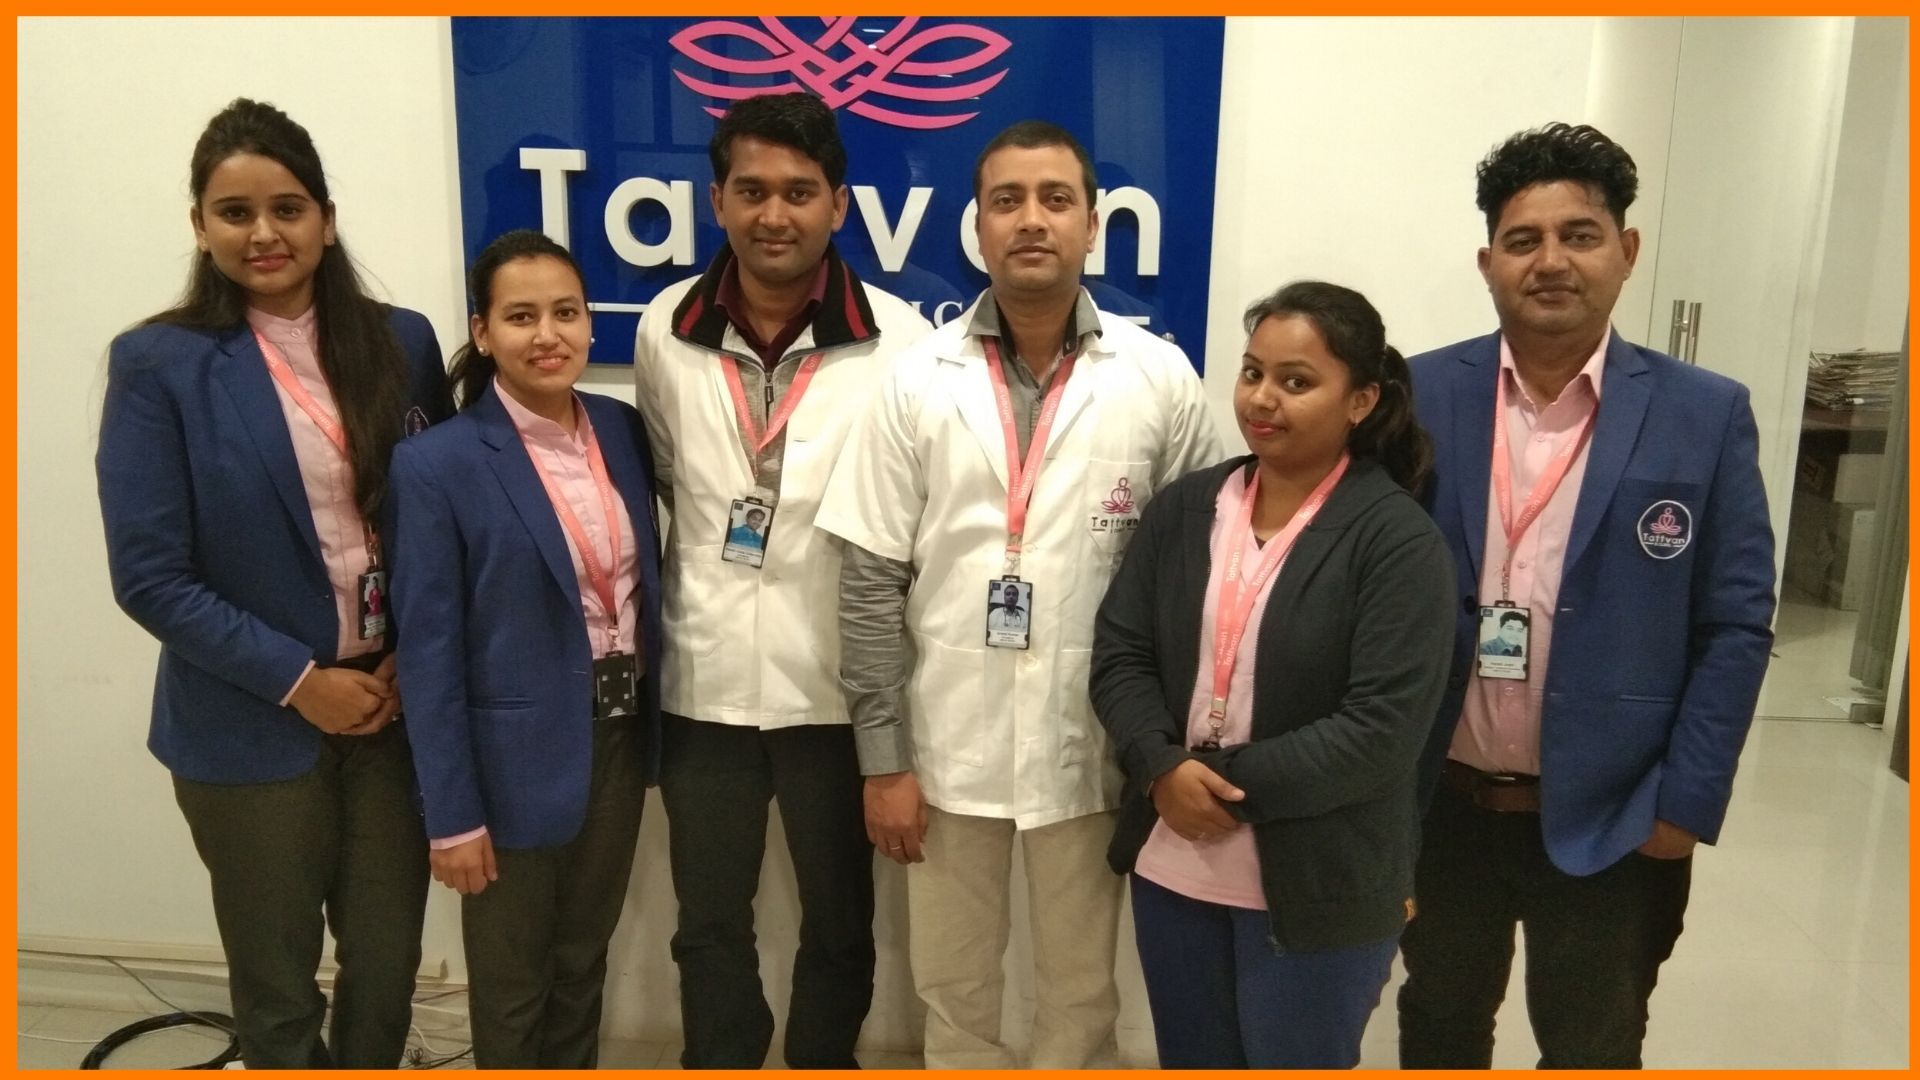 Tattvan - World-Class E-Clinics in India